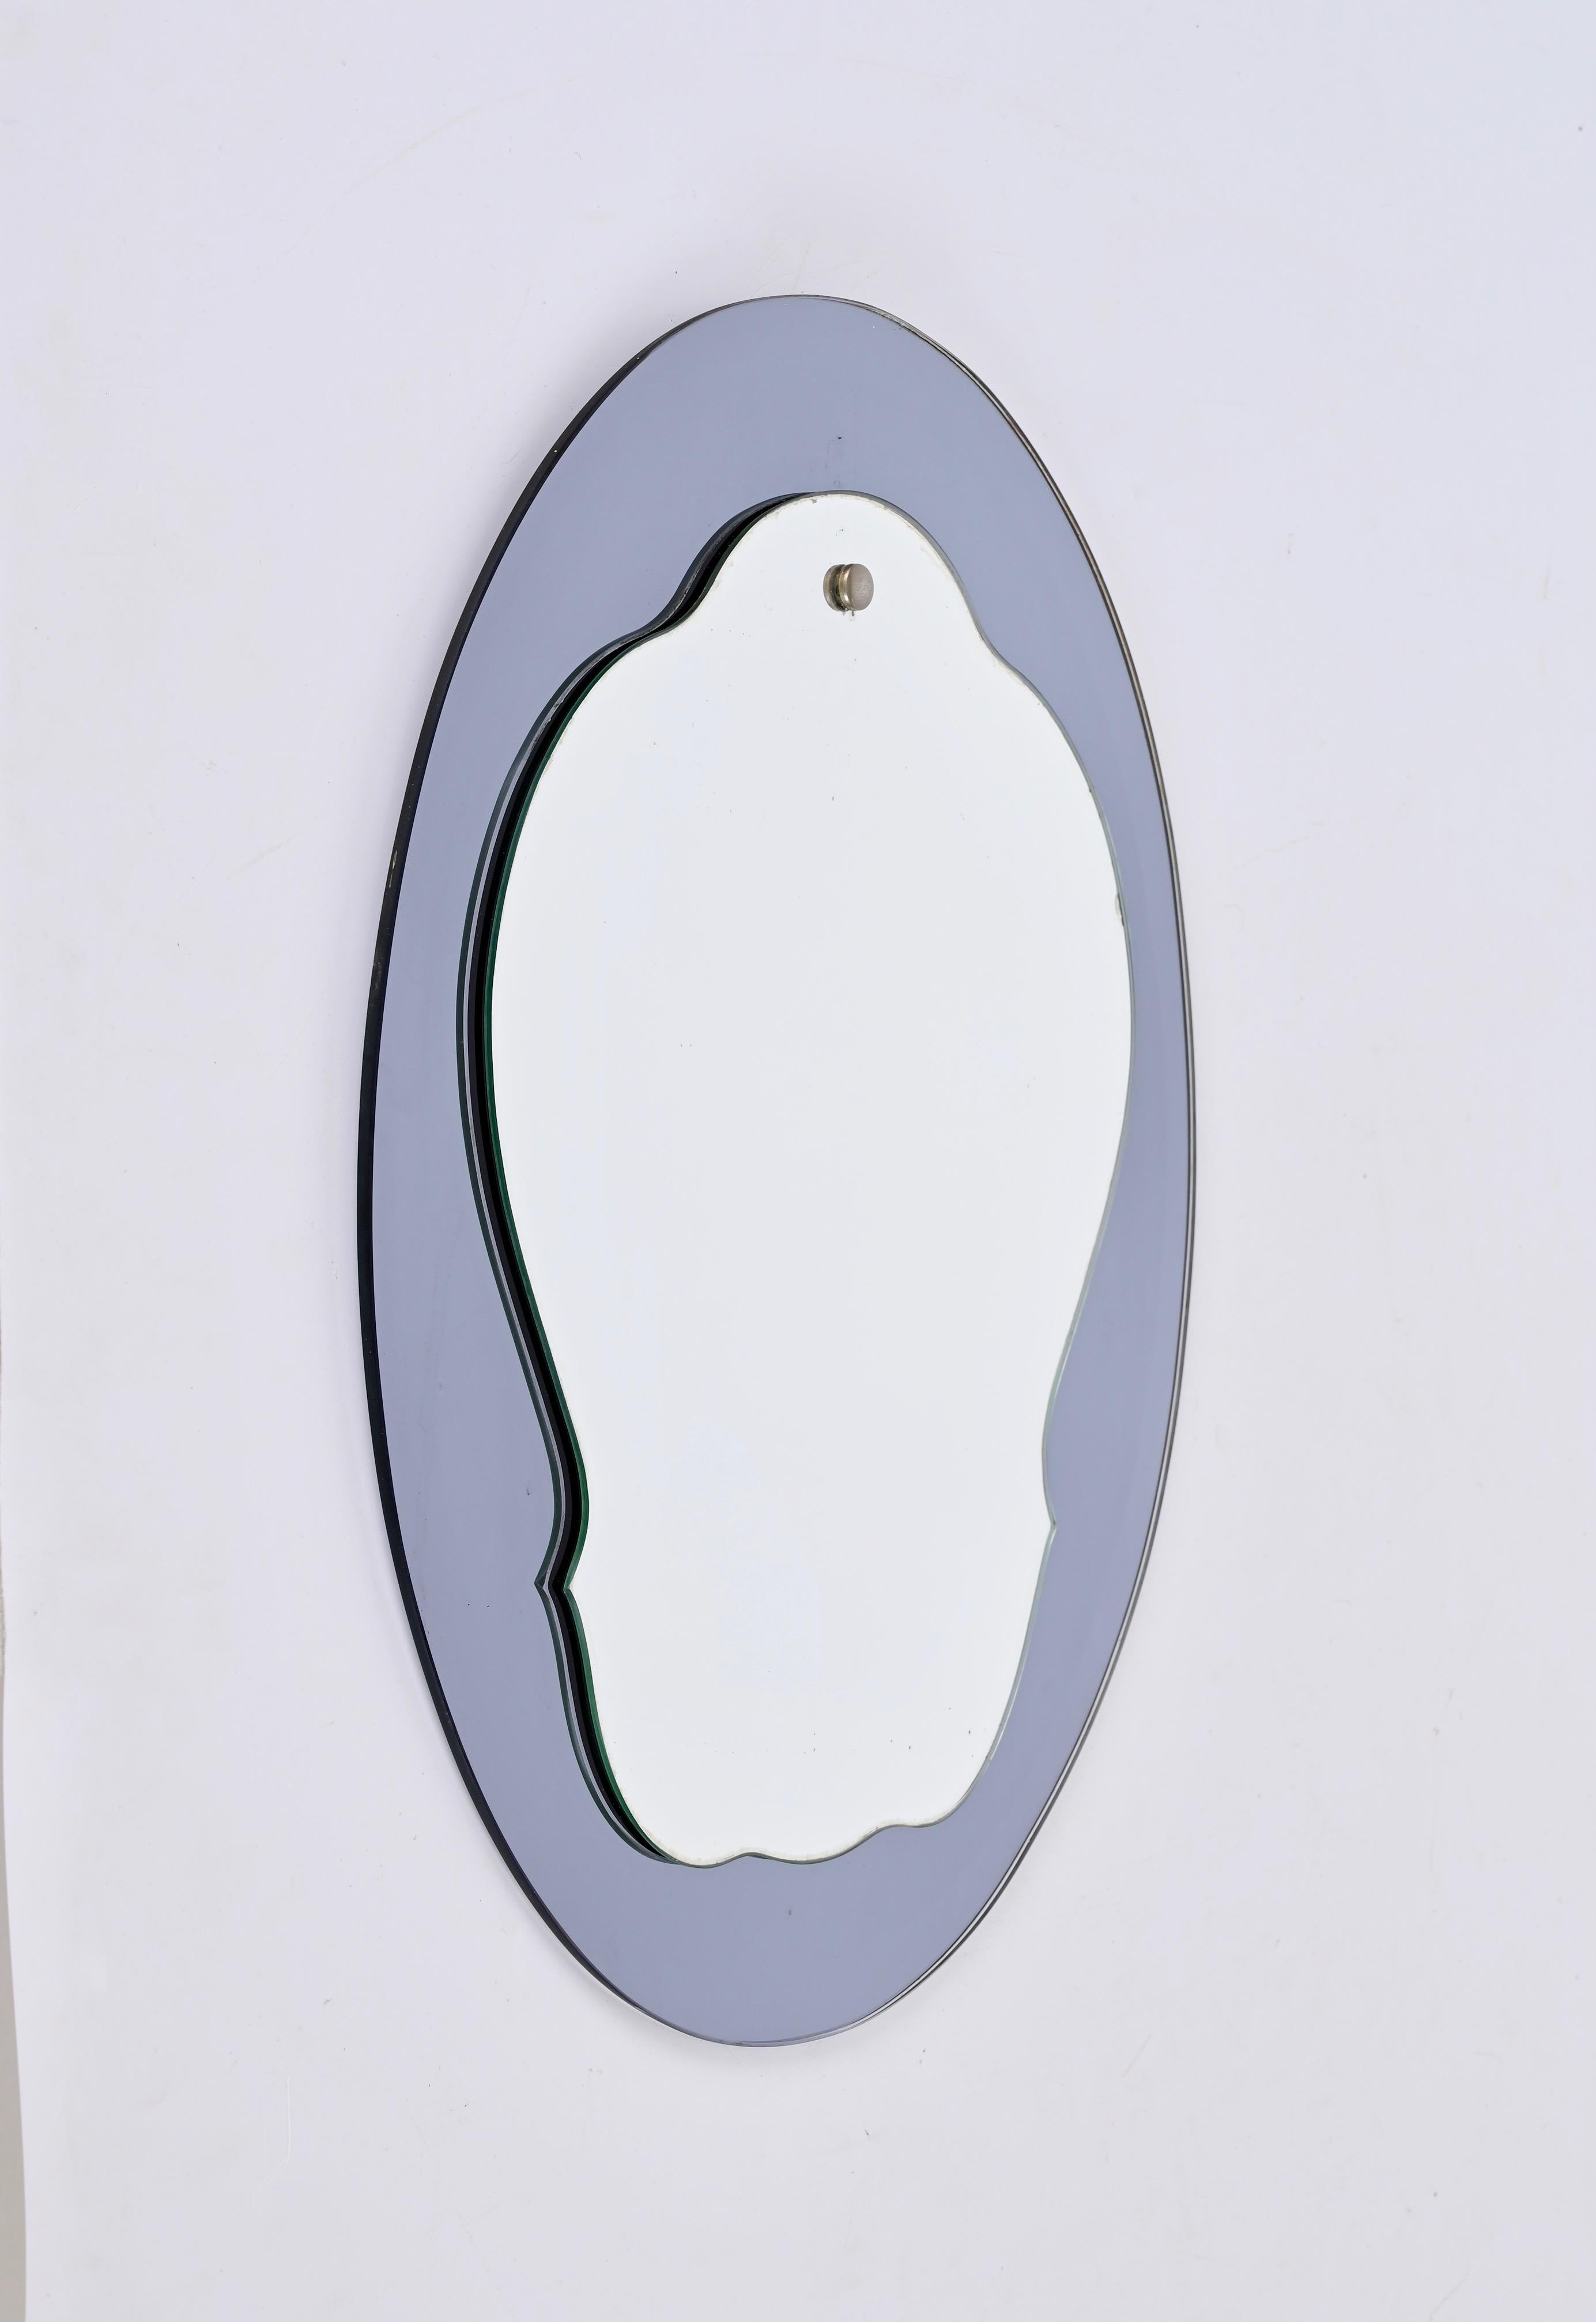 Superbe miroir ovale à deux niveaux du milieu du siècle dernier avec un cadre en verre bleu-gris. Cristal Arte a probablement conçu cette pièce fantastique qui a été produite en Italie dans les années 1960.

Grâce à son design et à ses lignes